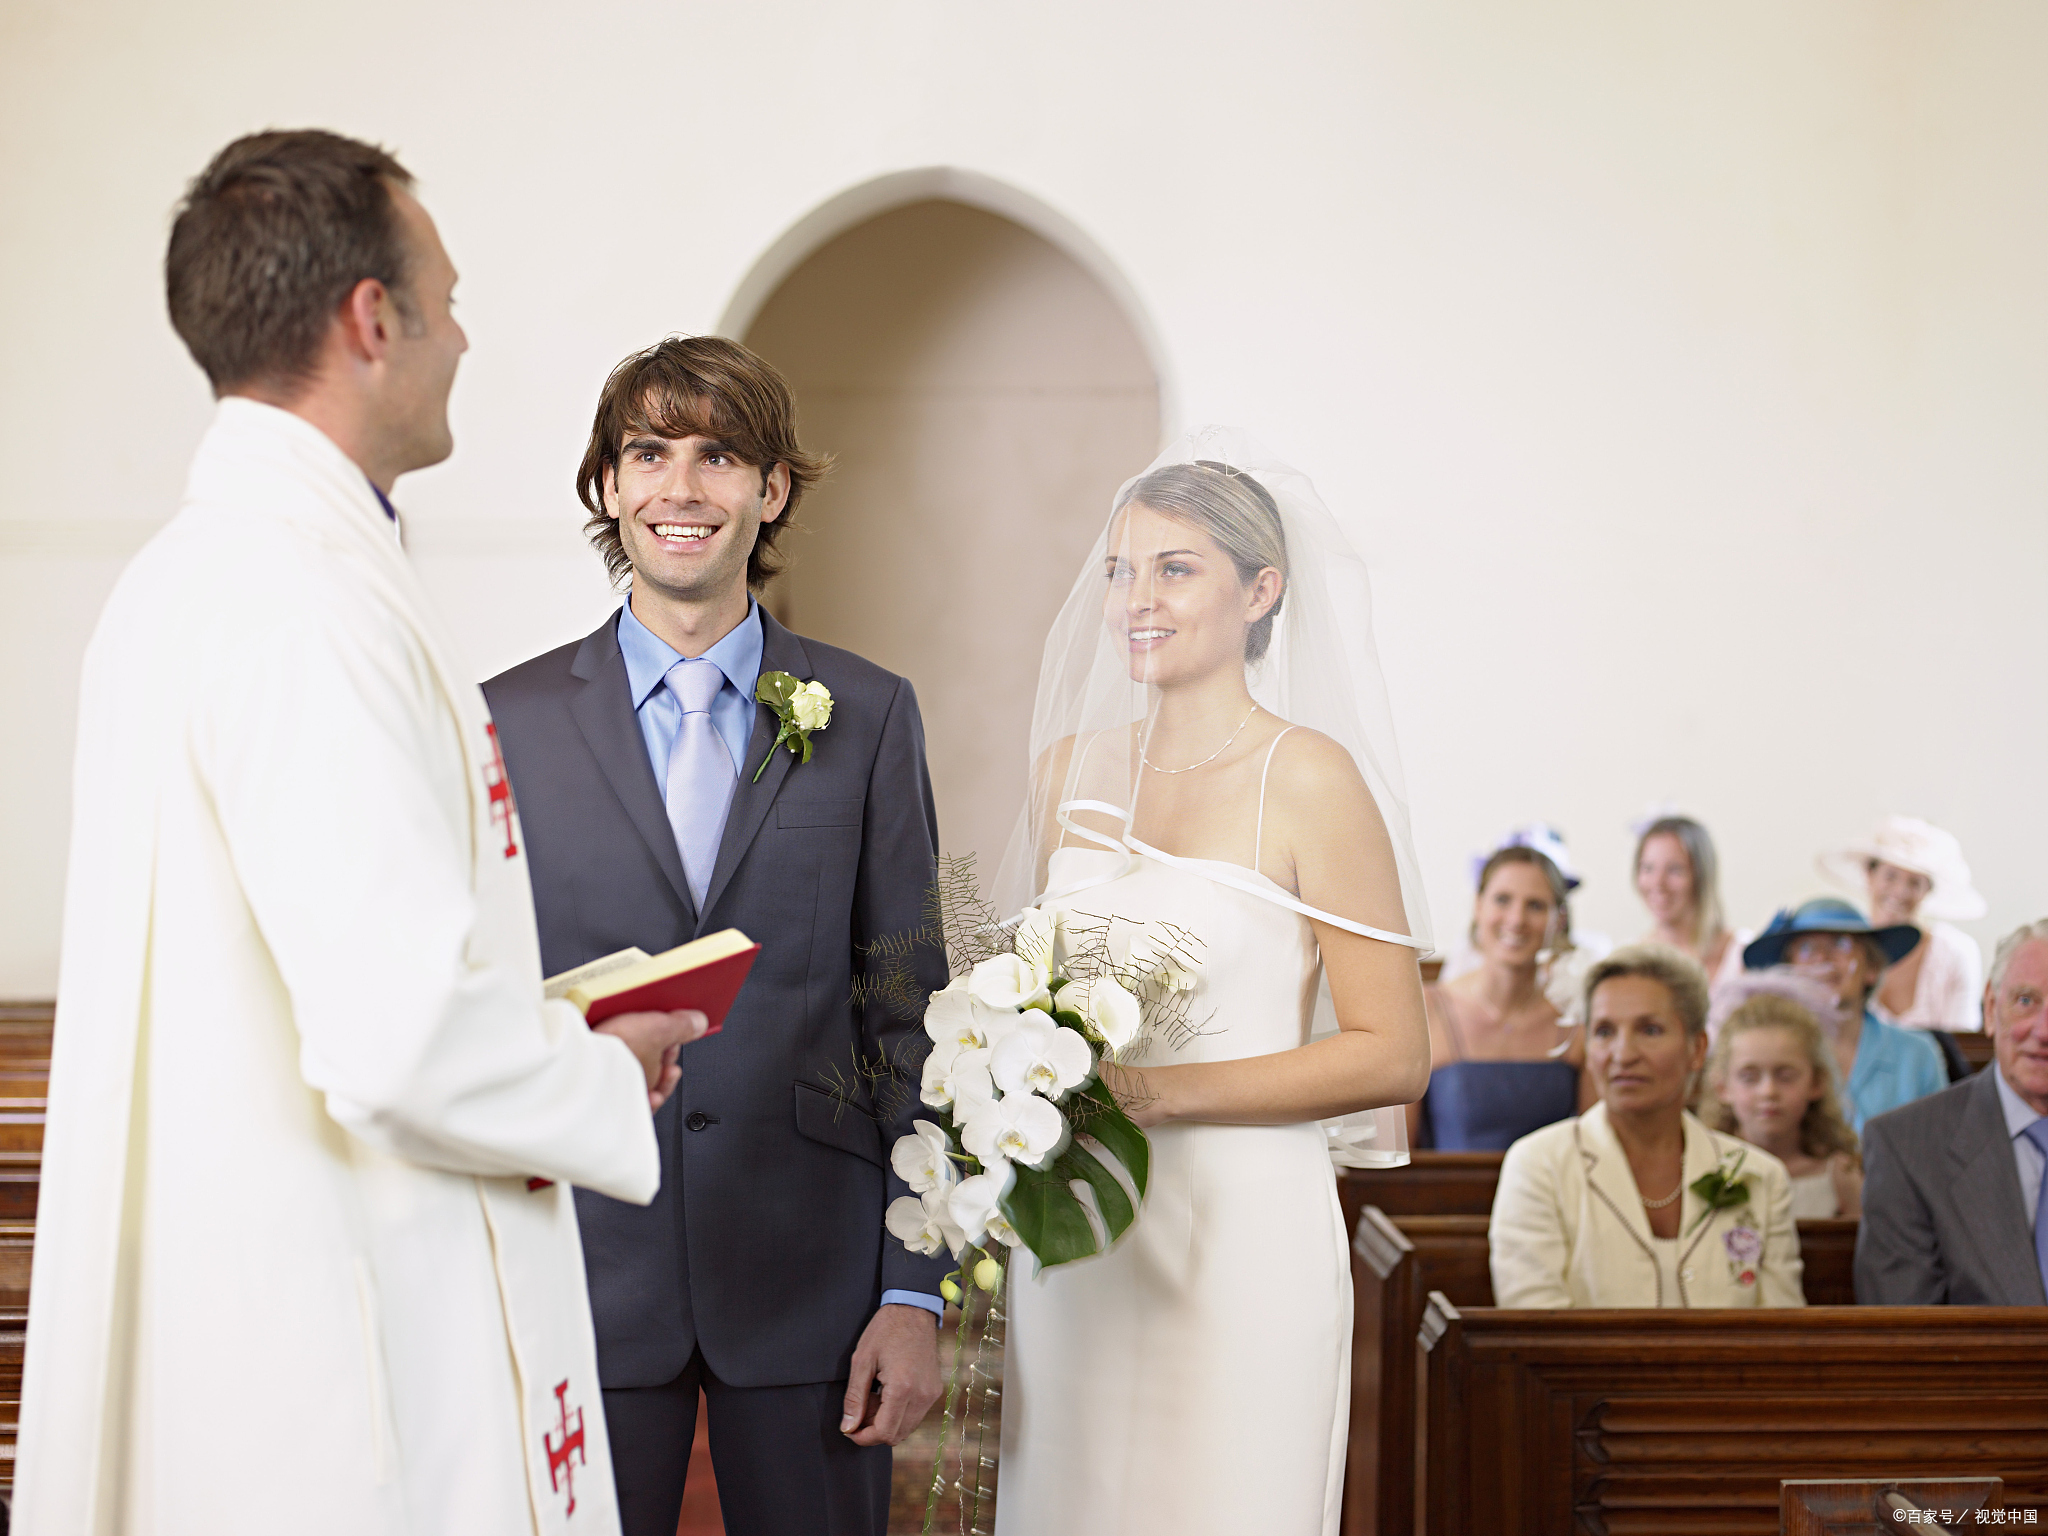 基督教徒结婚时都需要让牧师进行证婚，那么牧师的证婚词是什么样的?